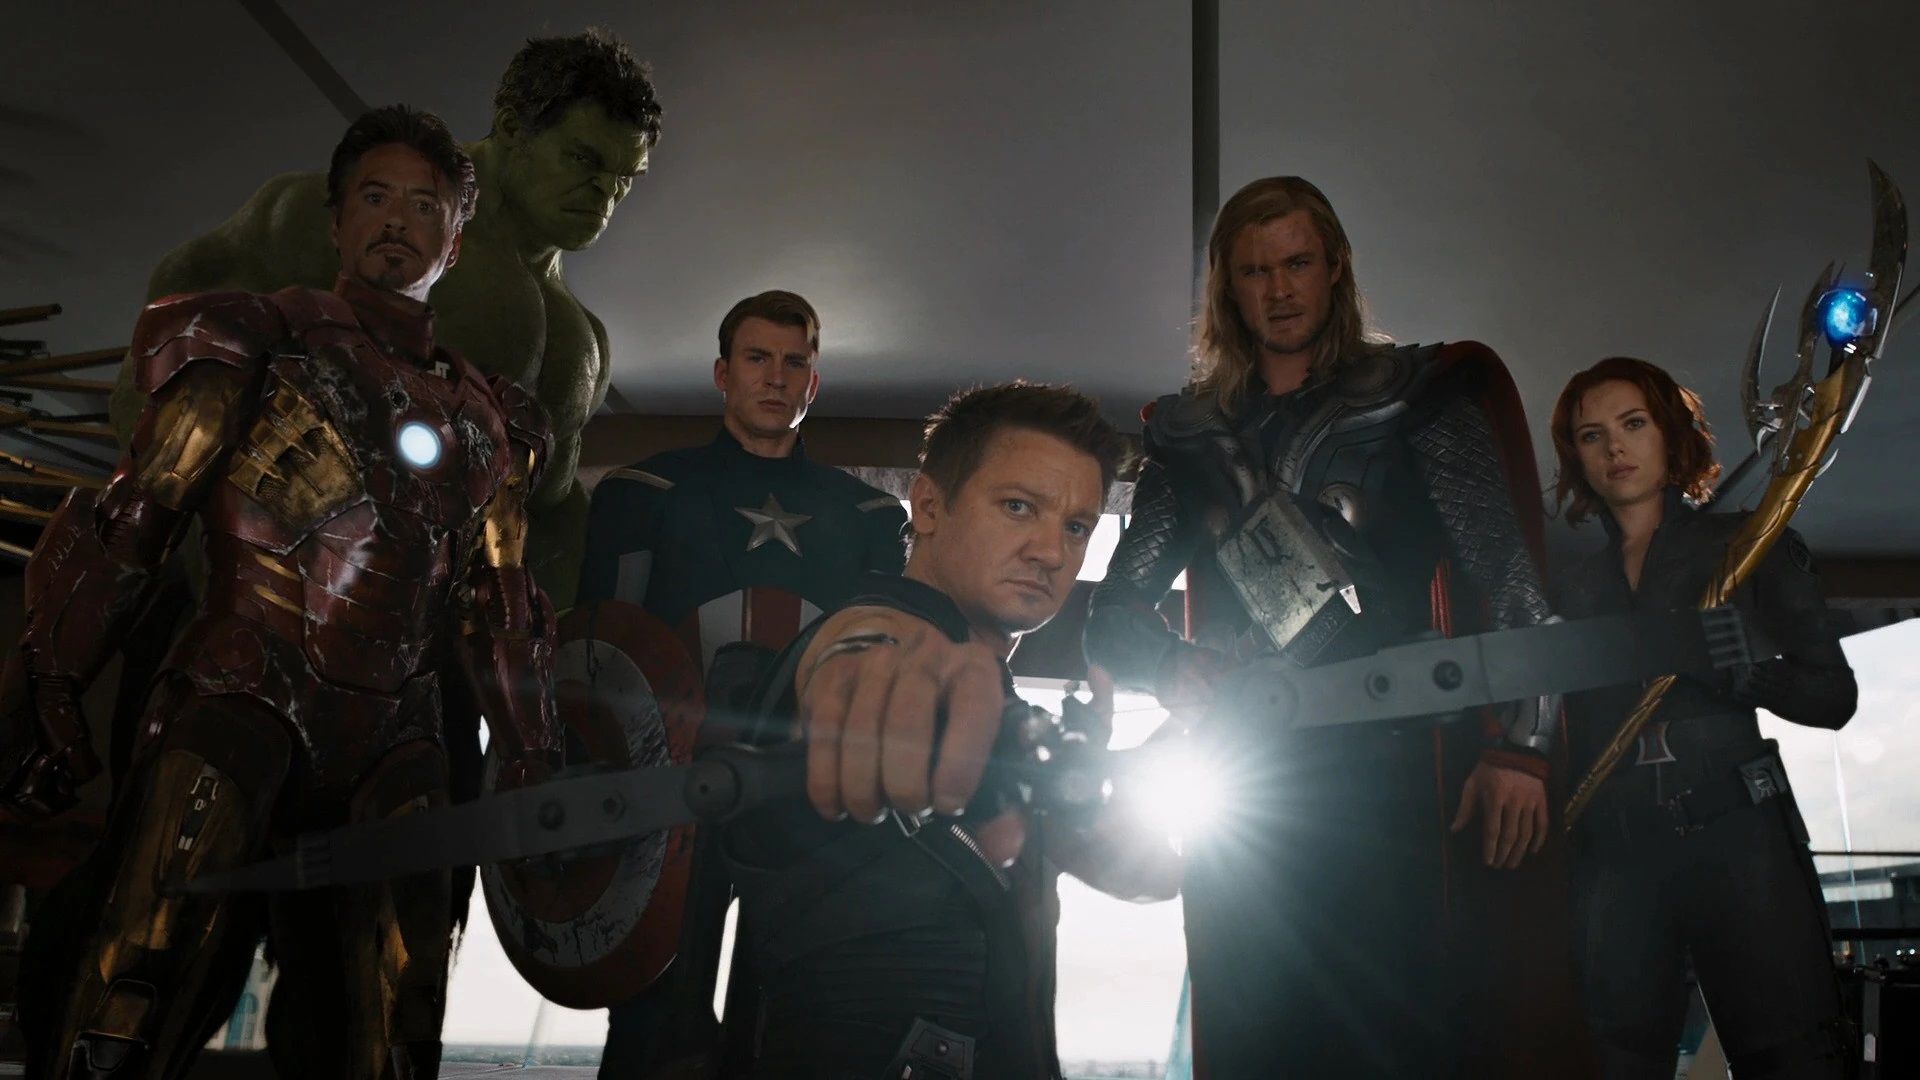 Marvel consider bringing back original Avengers